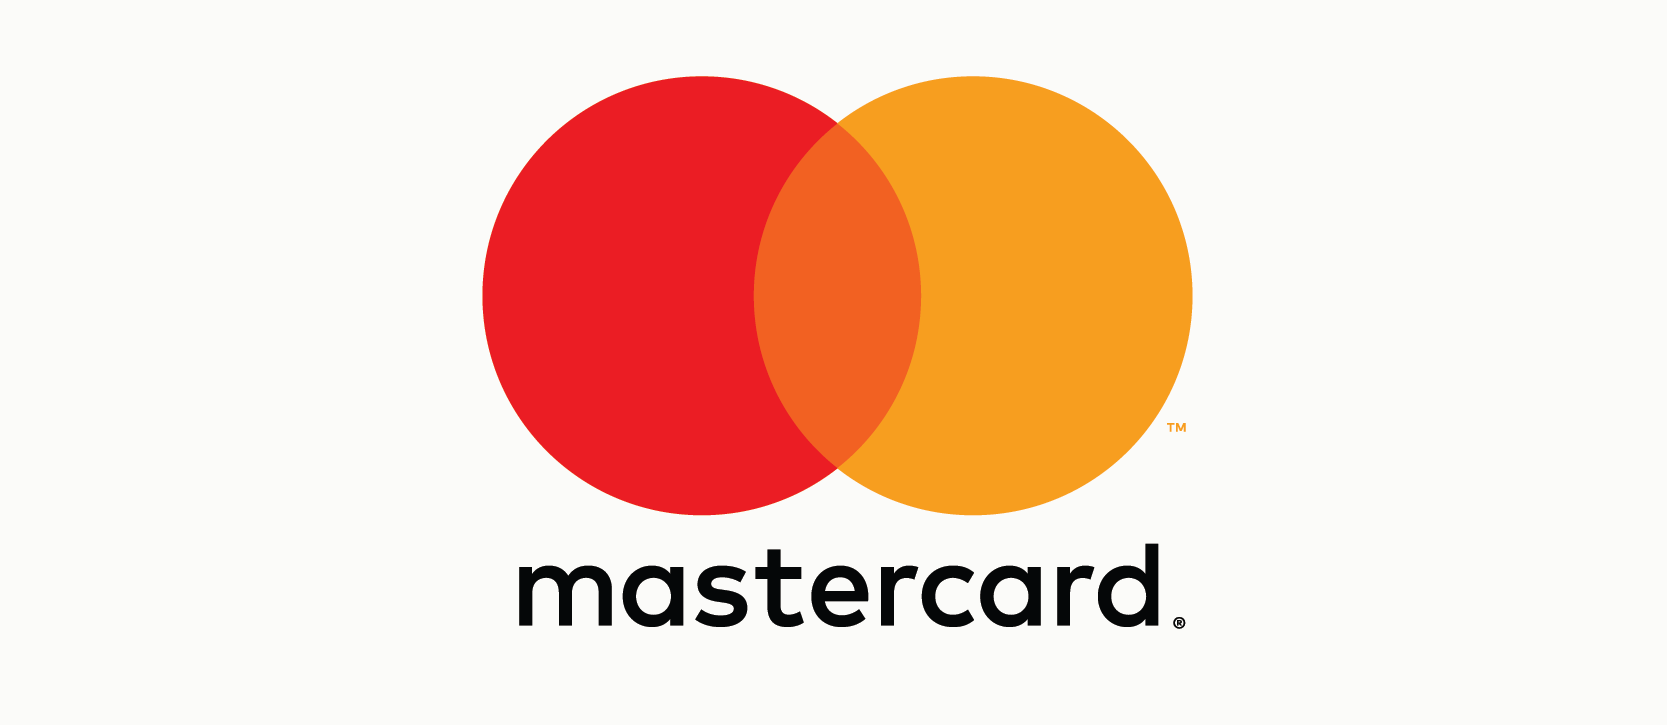 The Mastercard logo, an example of an analogous color scheme. 